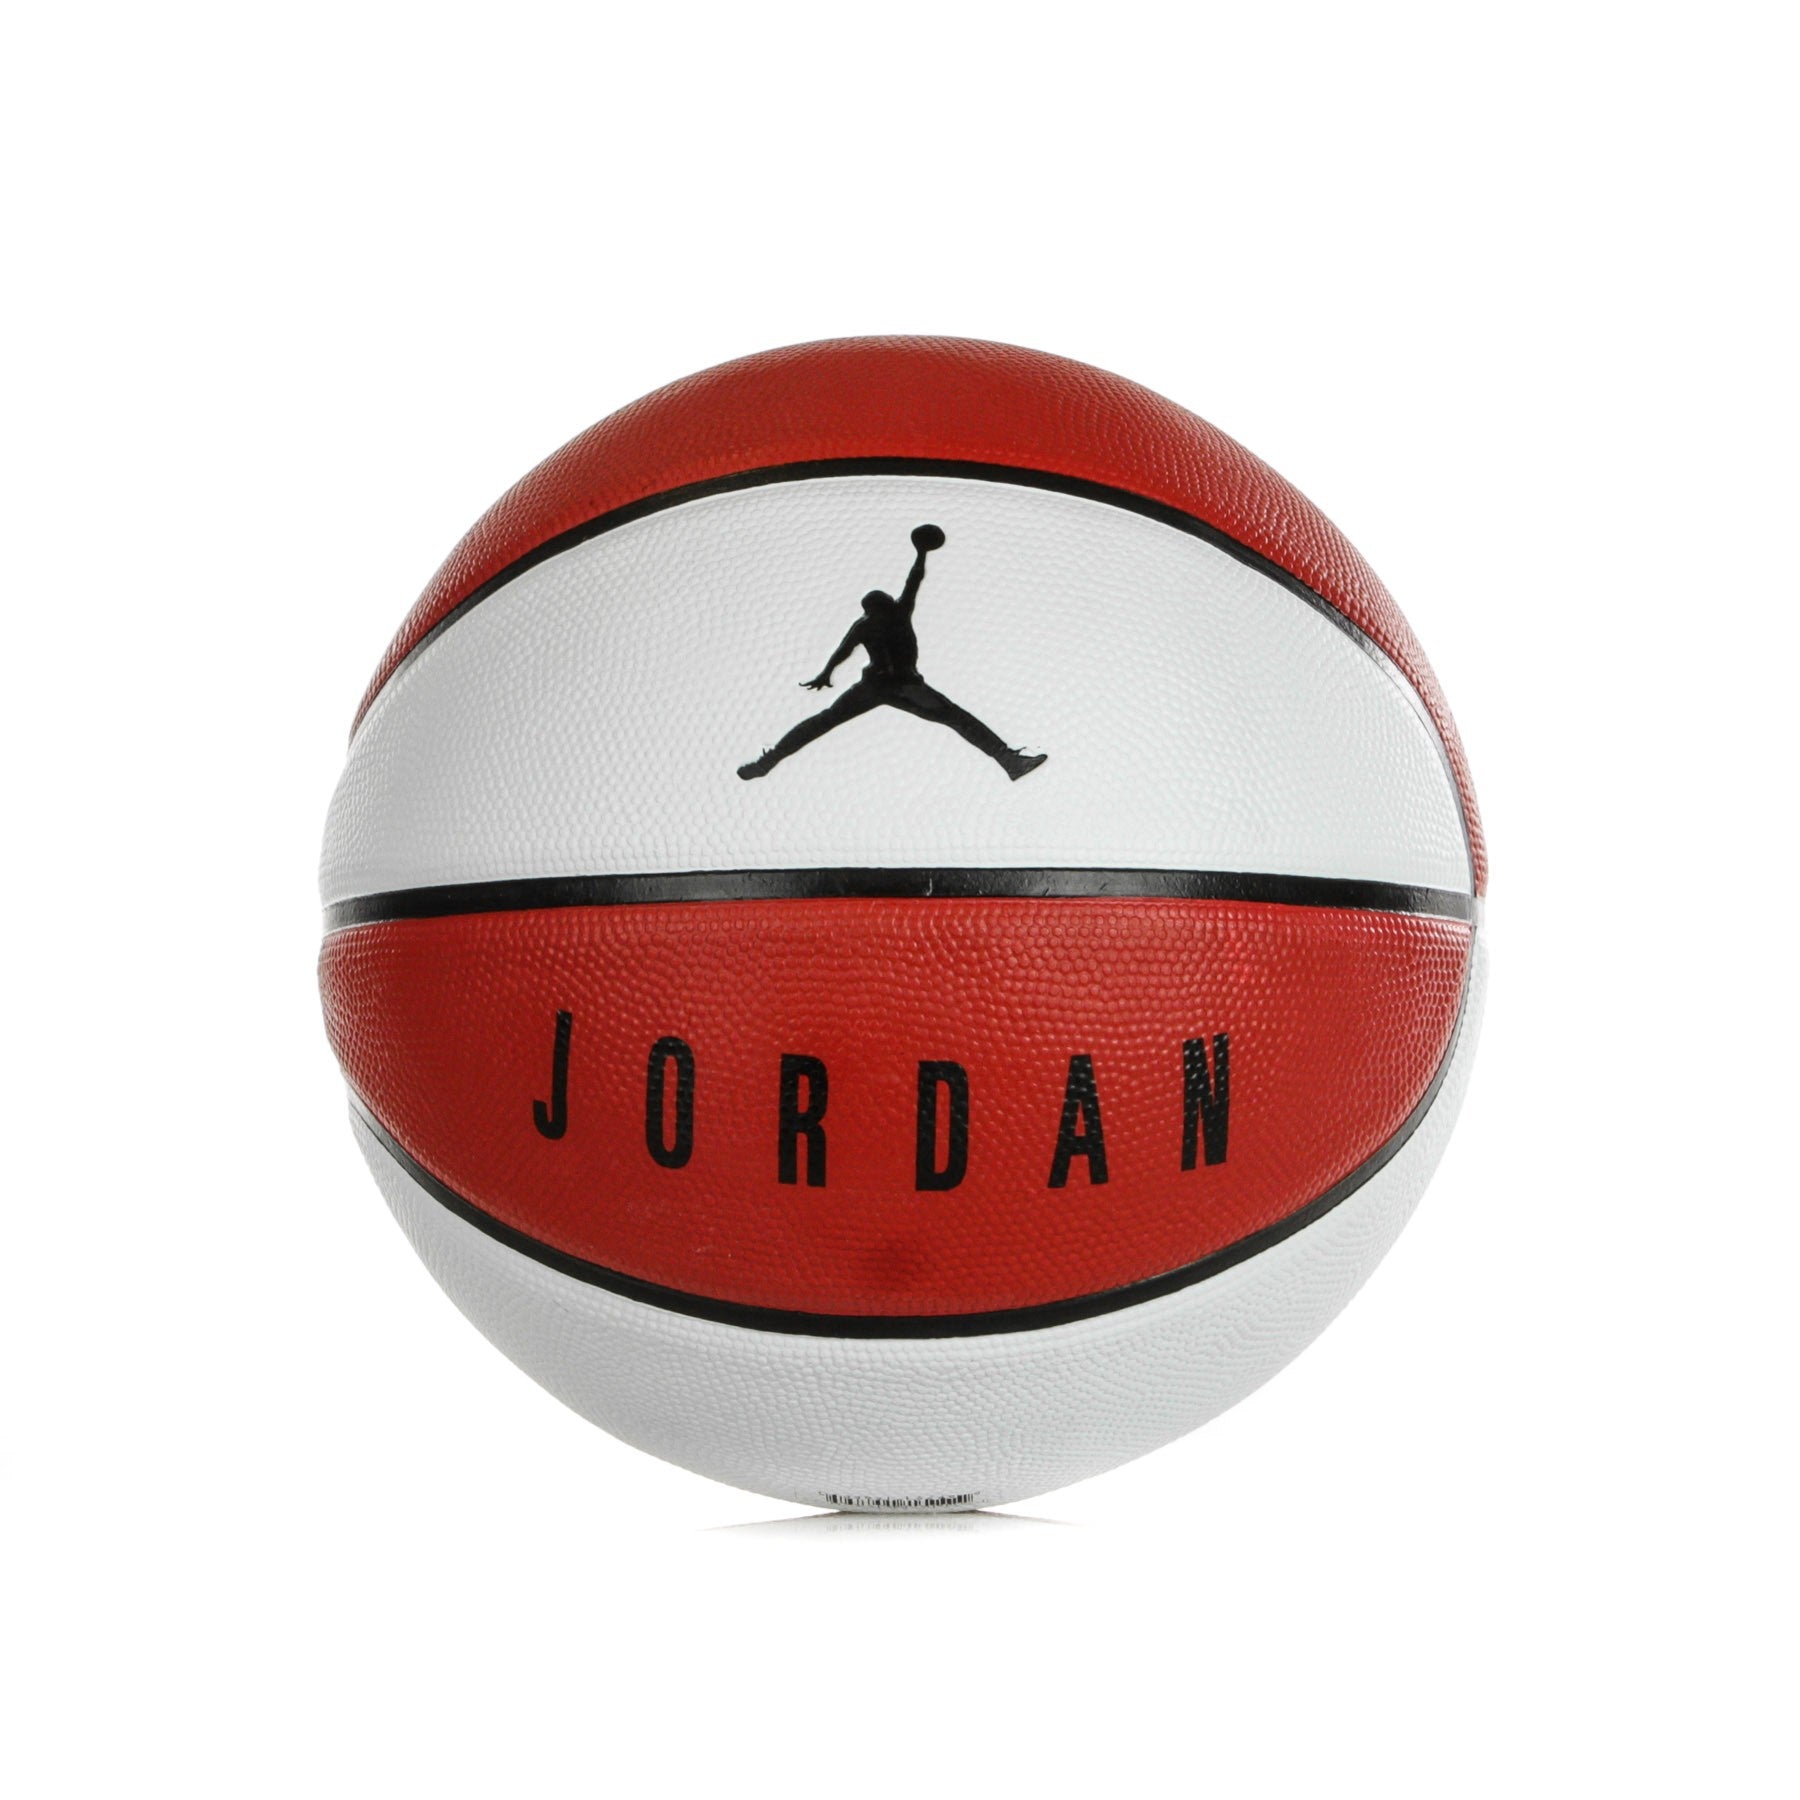 Jordan Nba, Pallone Uomo Playground 8p Size 7, Multi